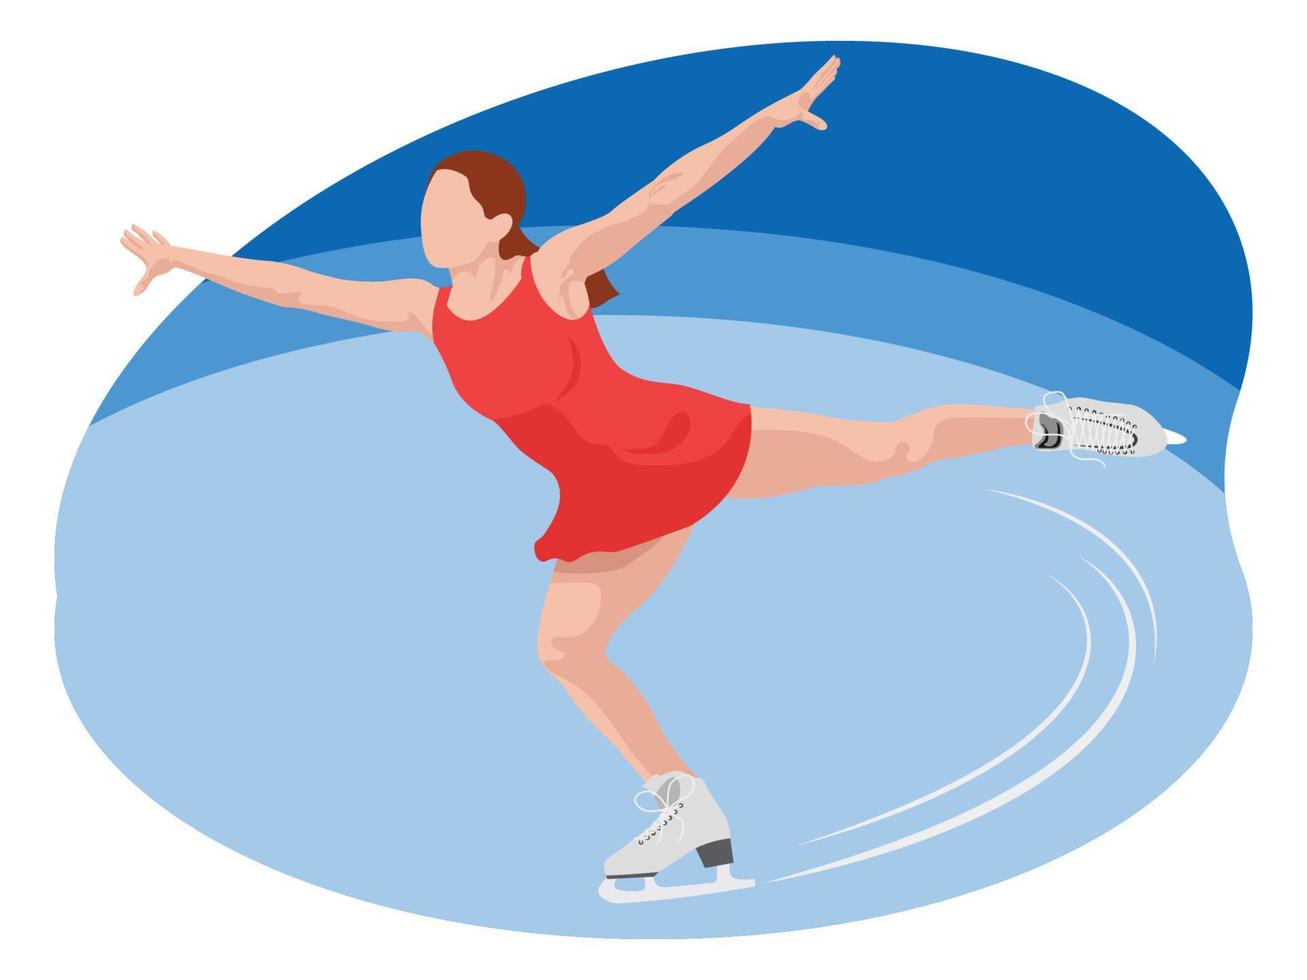 Female doing figure skating illustration. vector